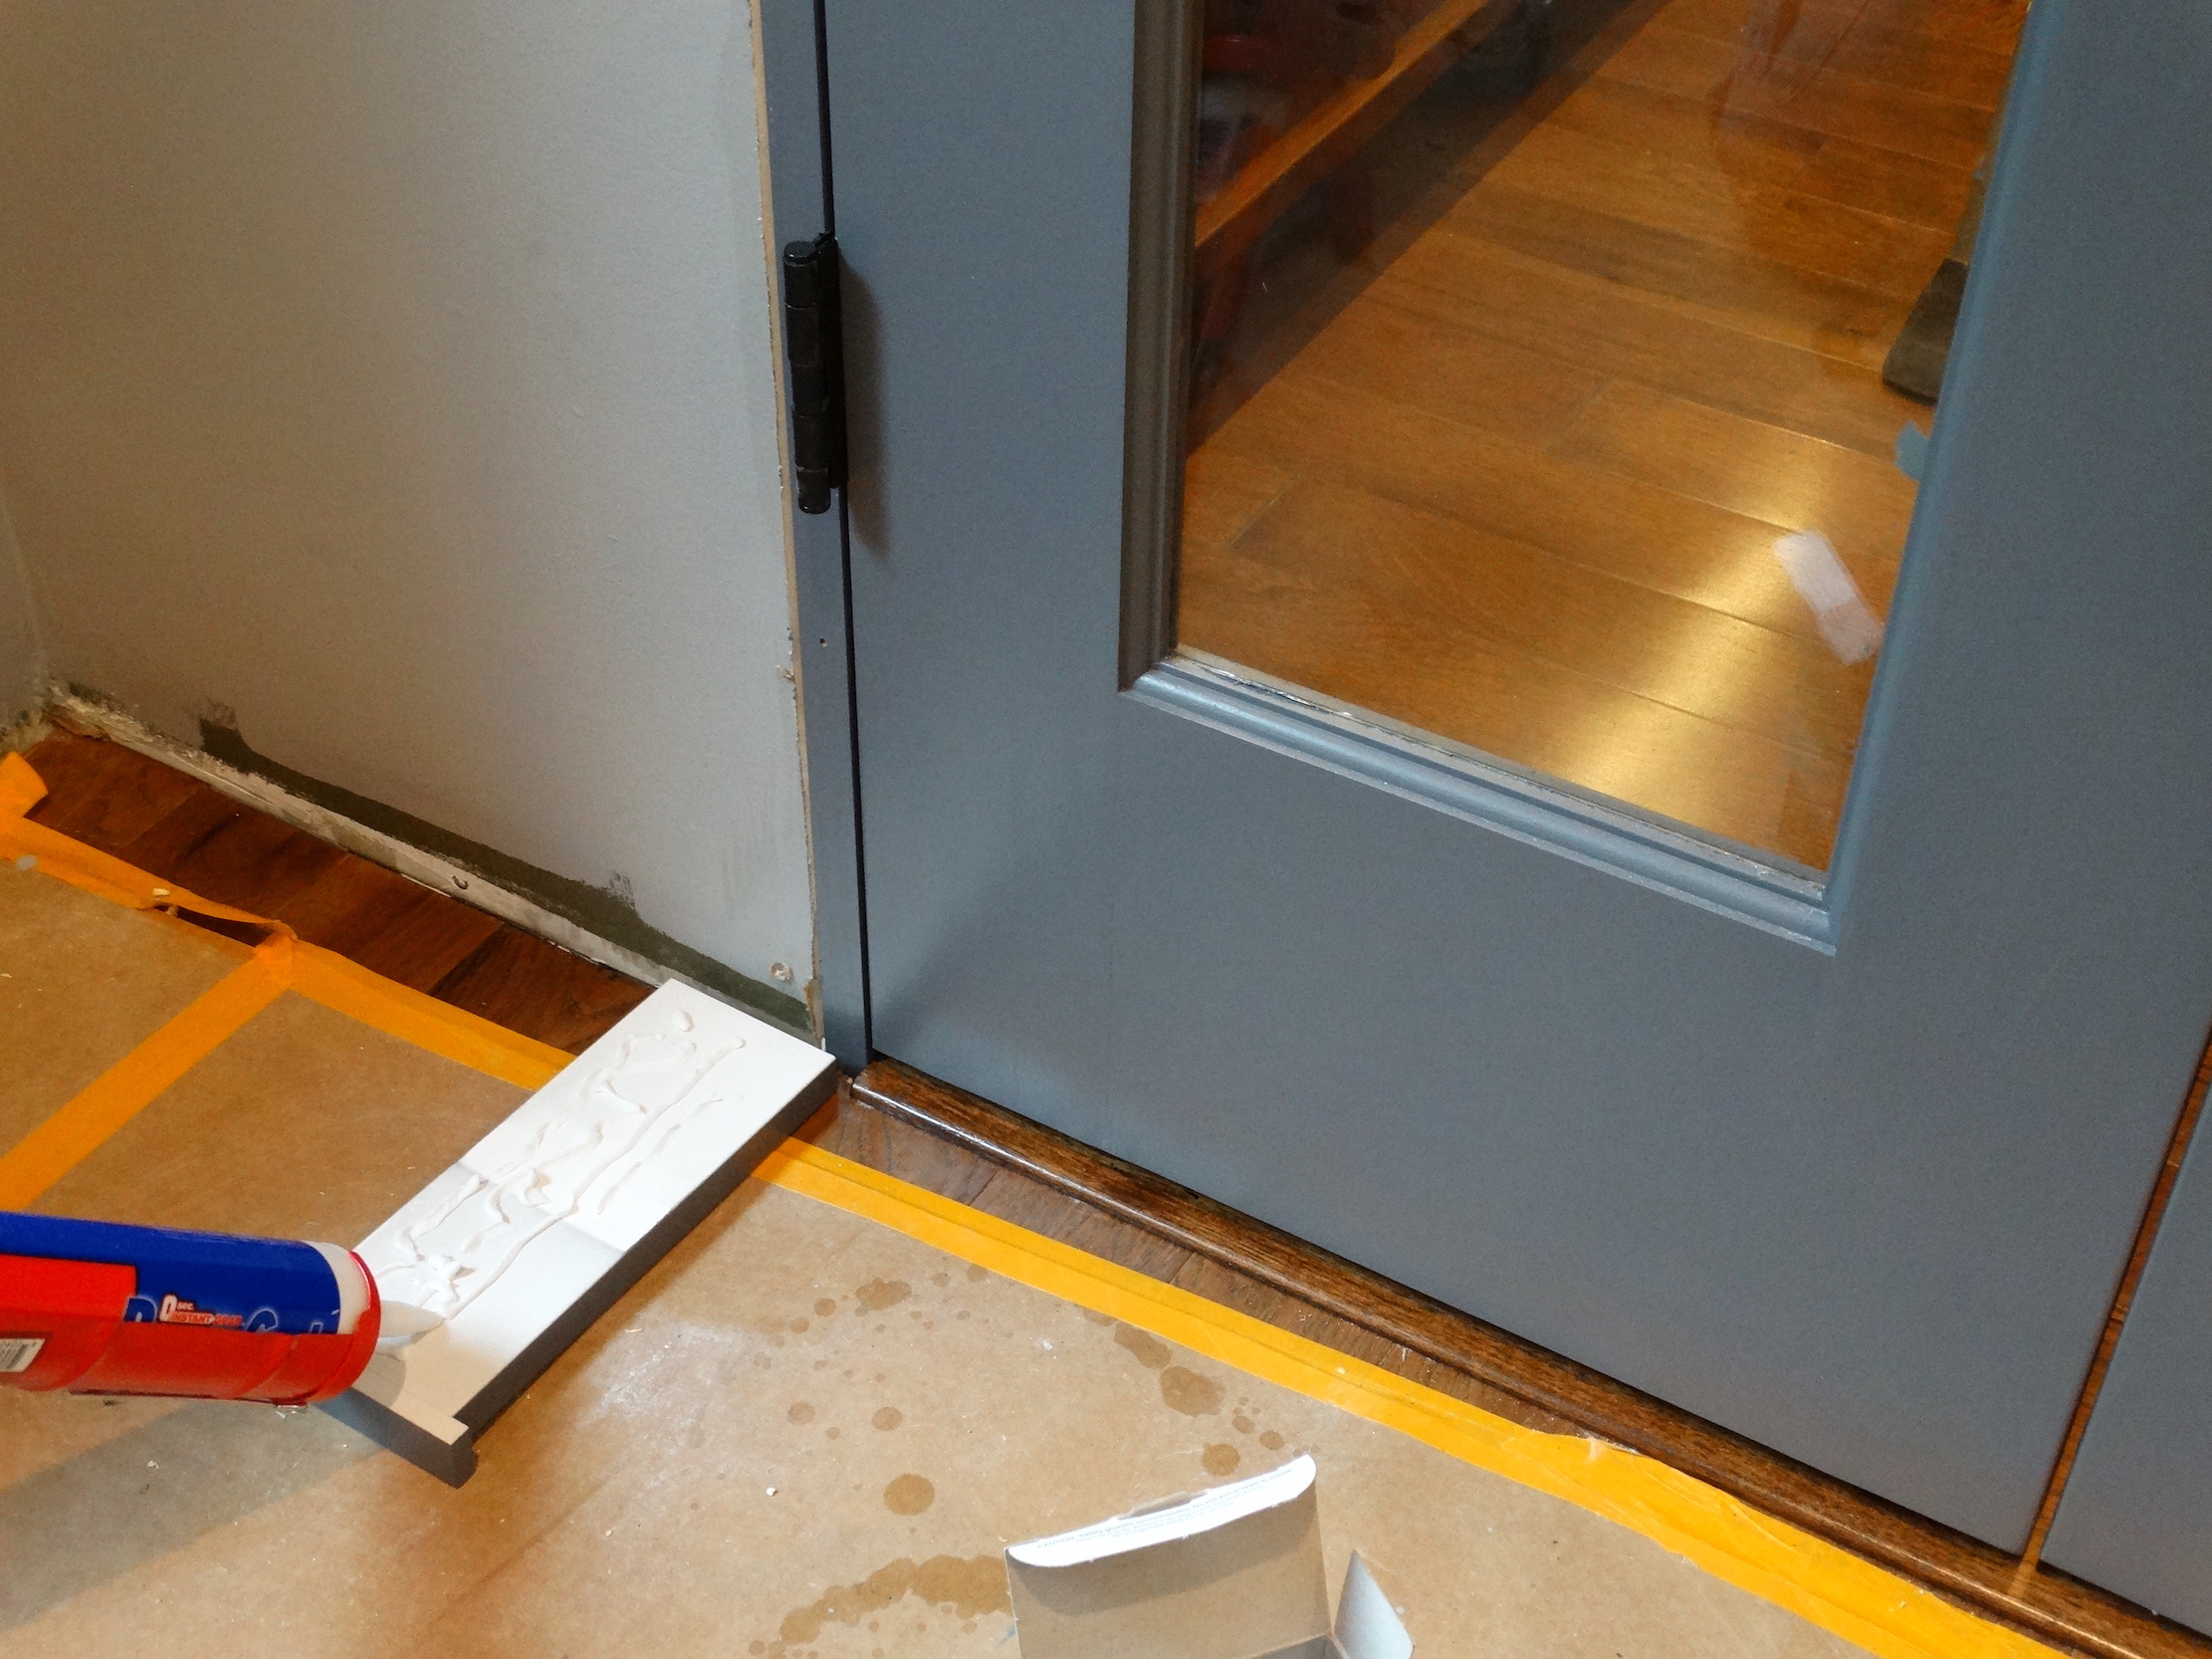 measuring trim against doorframe